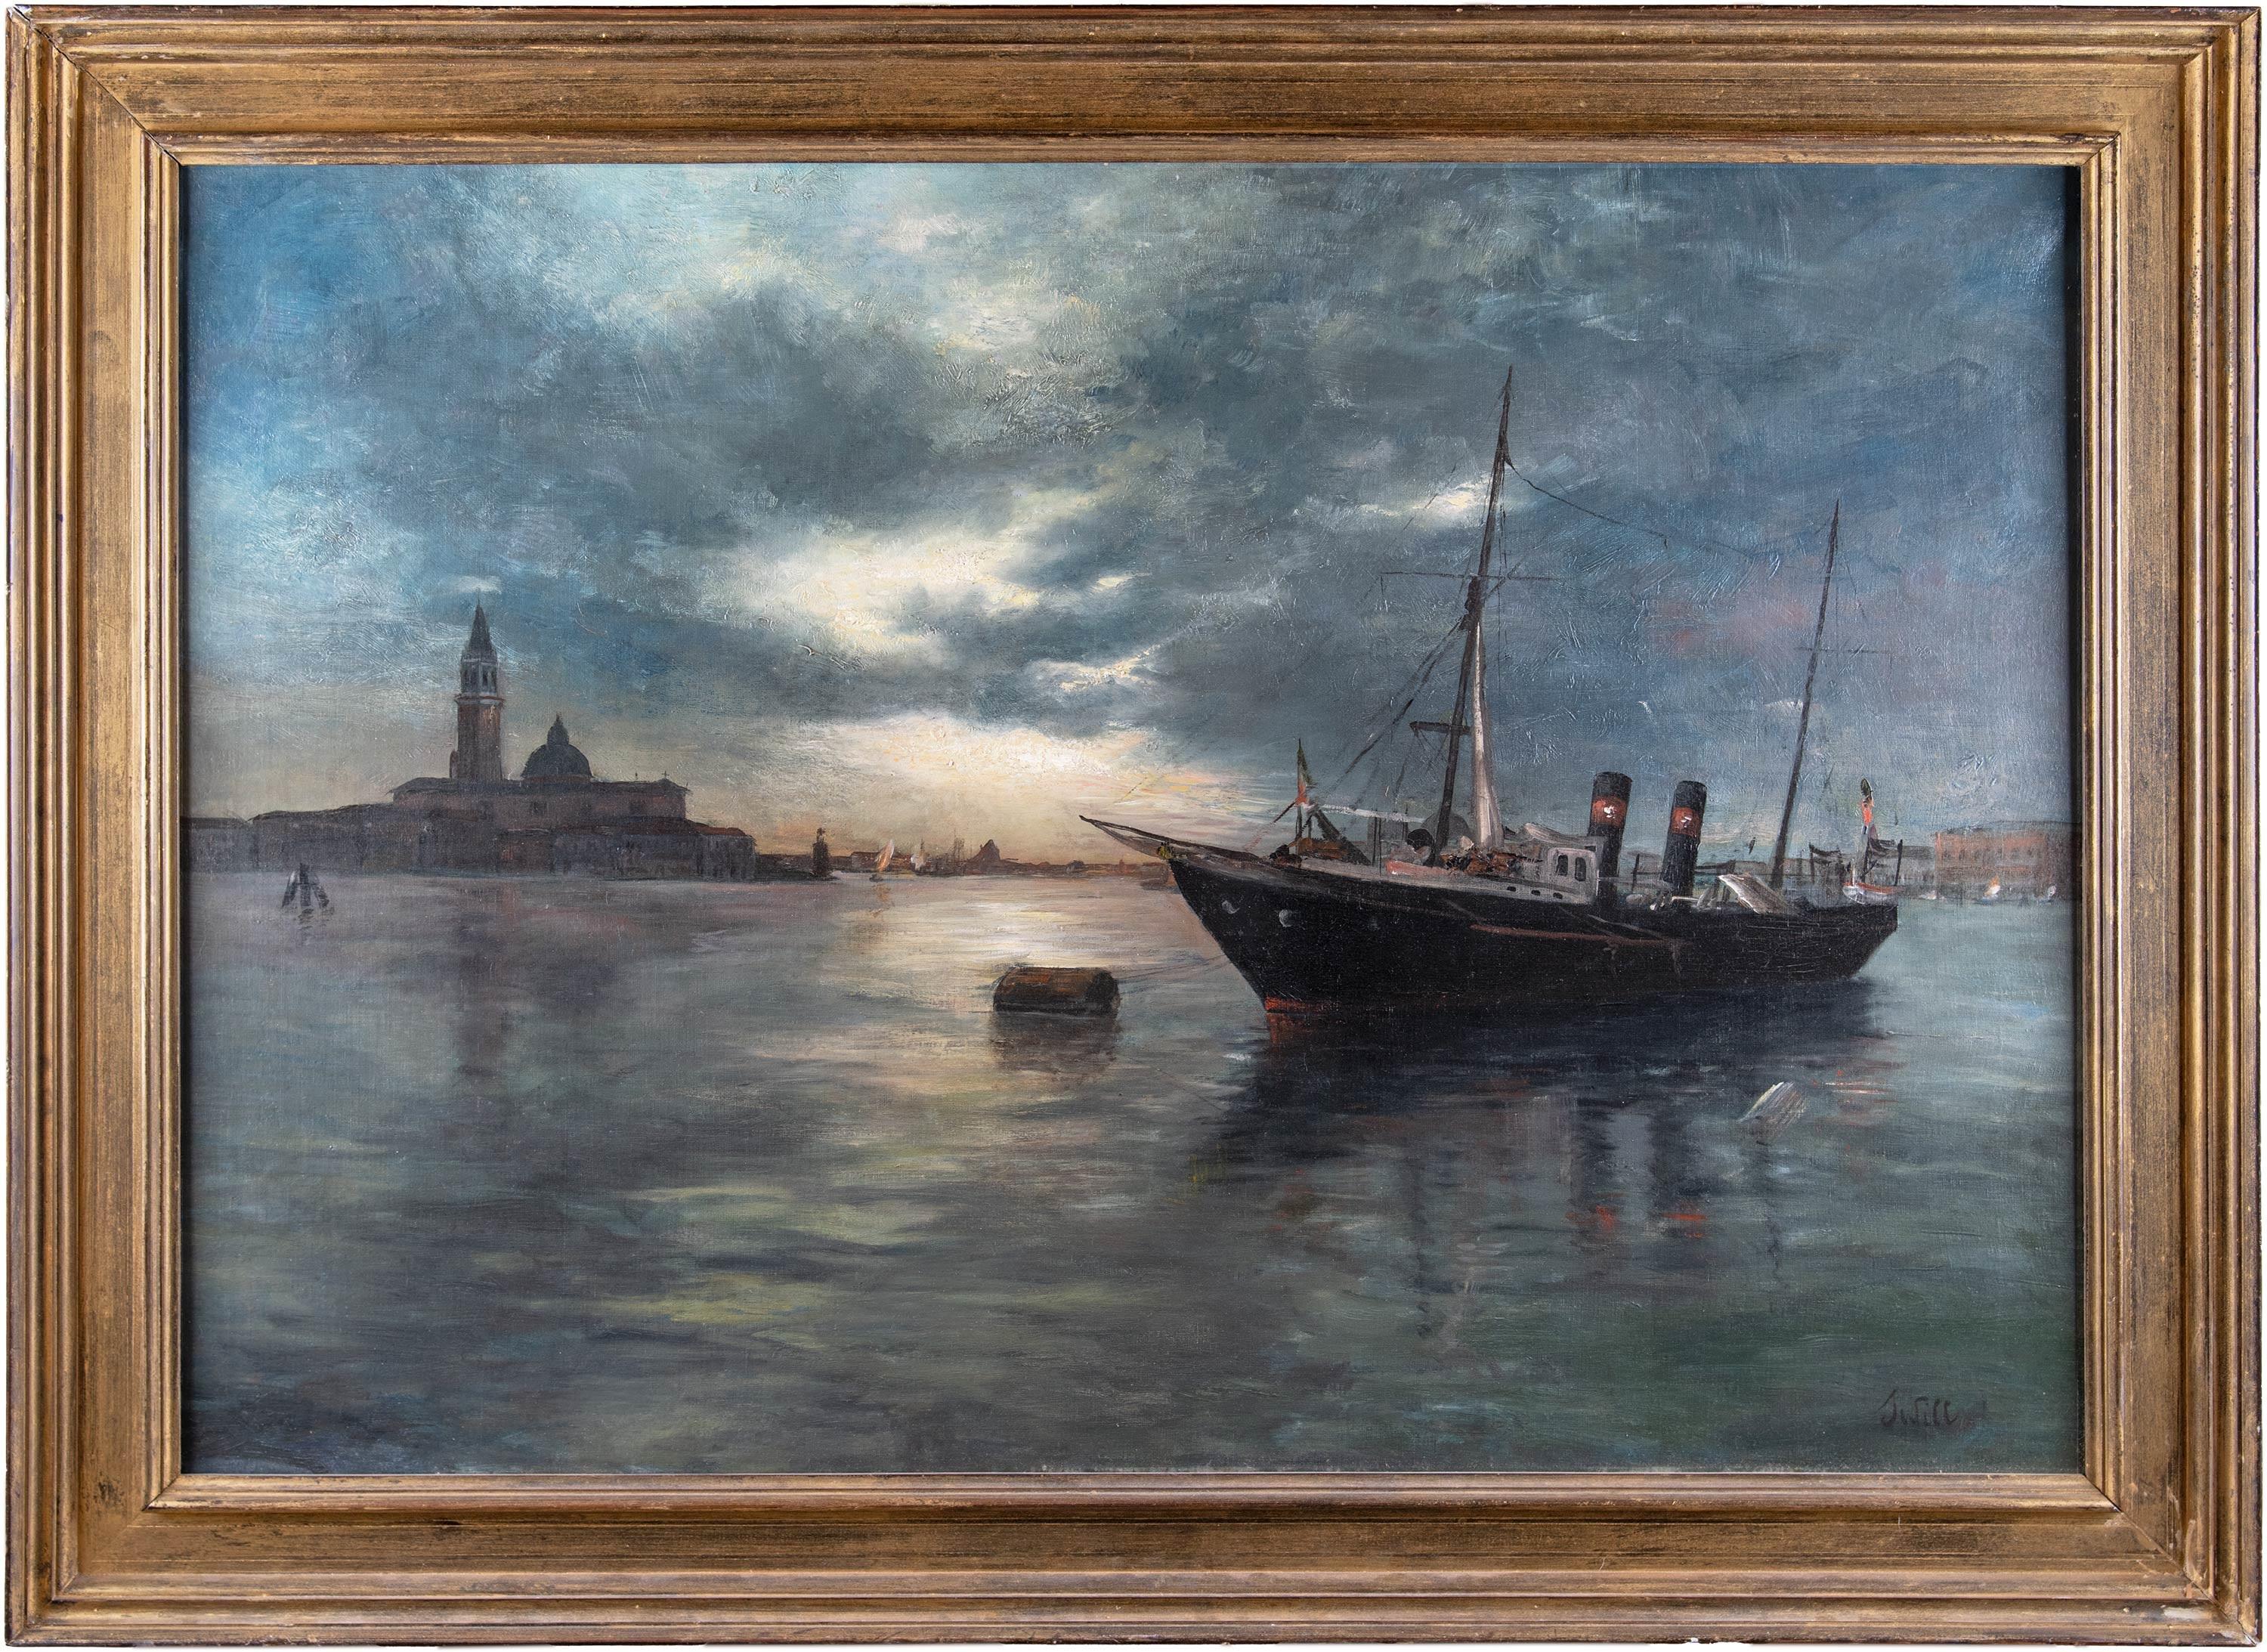 Marie-Joseph Léon Clave Landscape Painting - 19th century Venetian view painting - Venice - Oil on canvas landscape sea